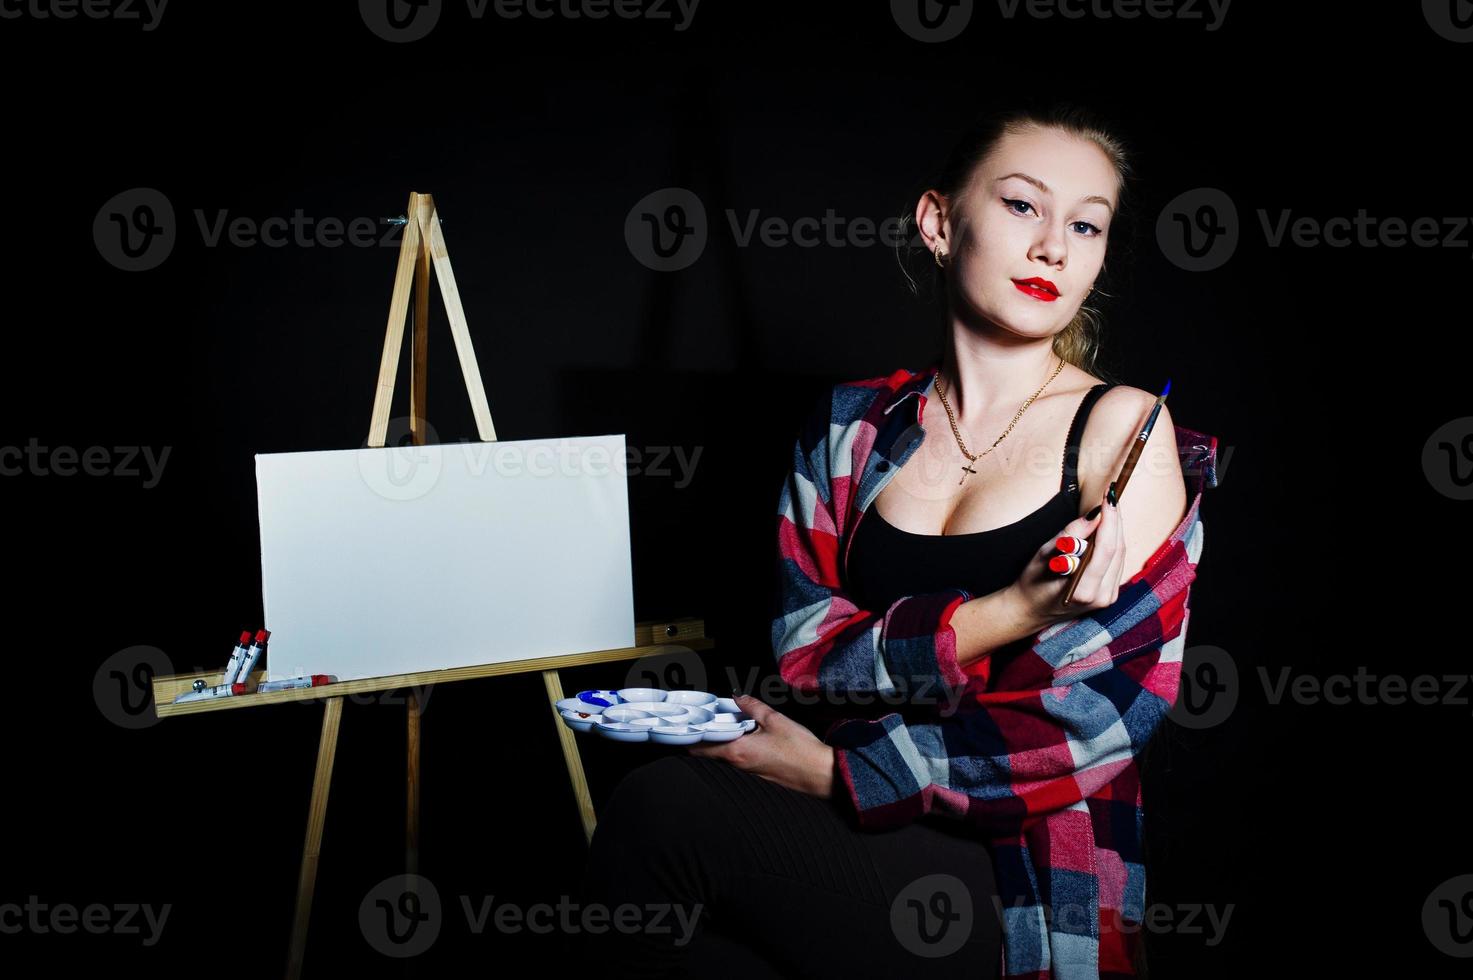 mooie vrouw kunstenaar schilder met borstels en olie canvas poseren in studio geïsoleerd op zwart. foto